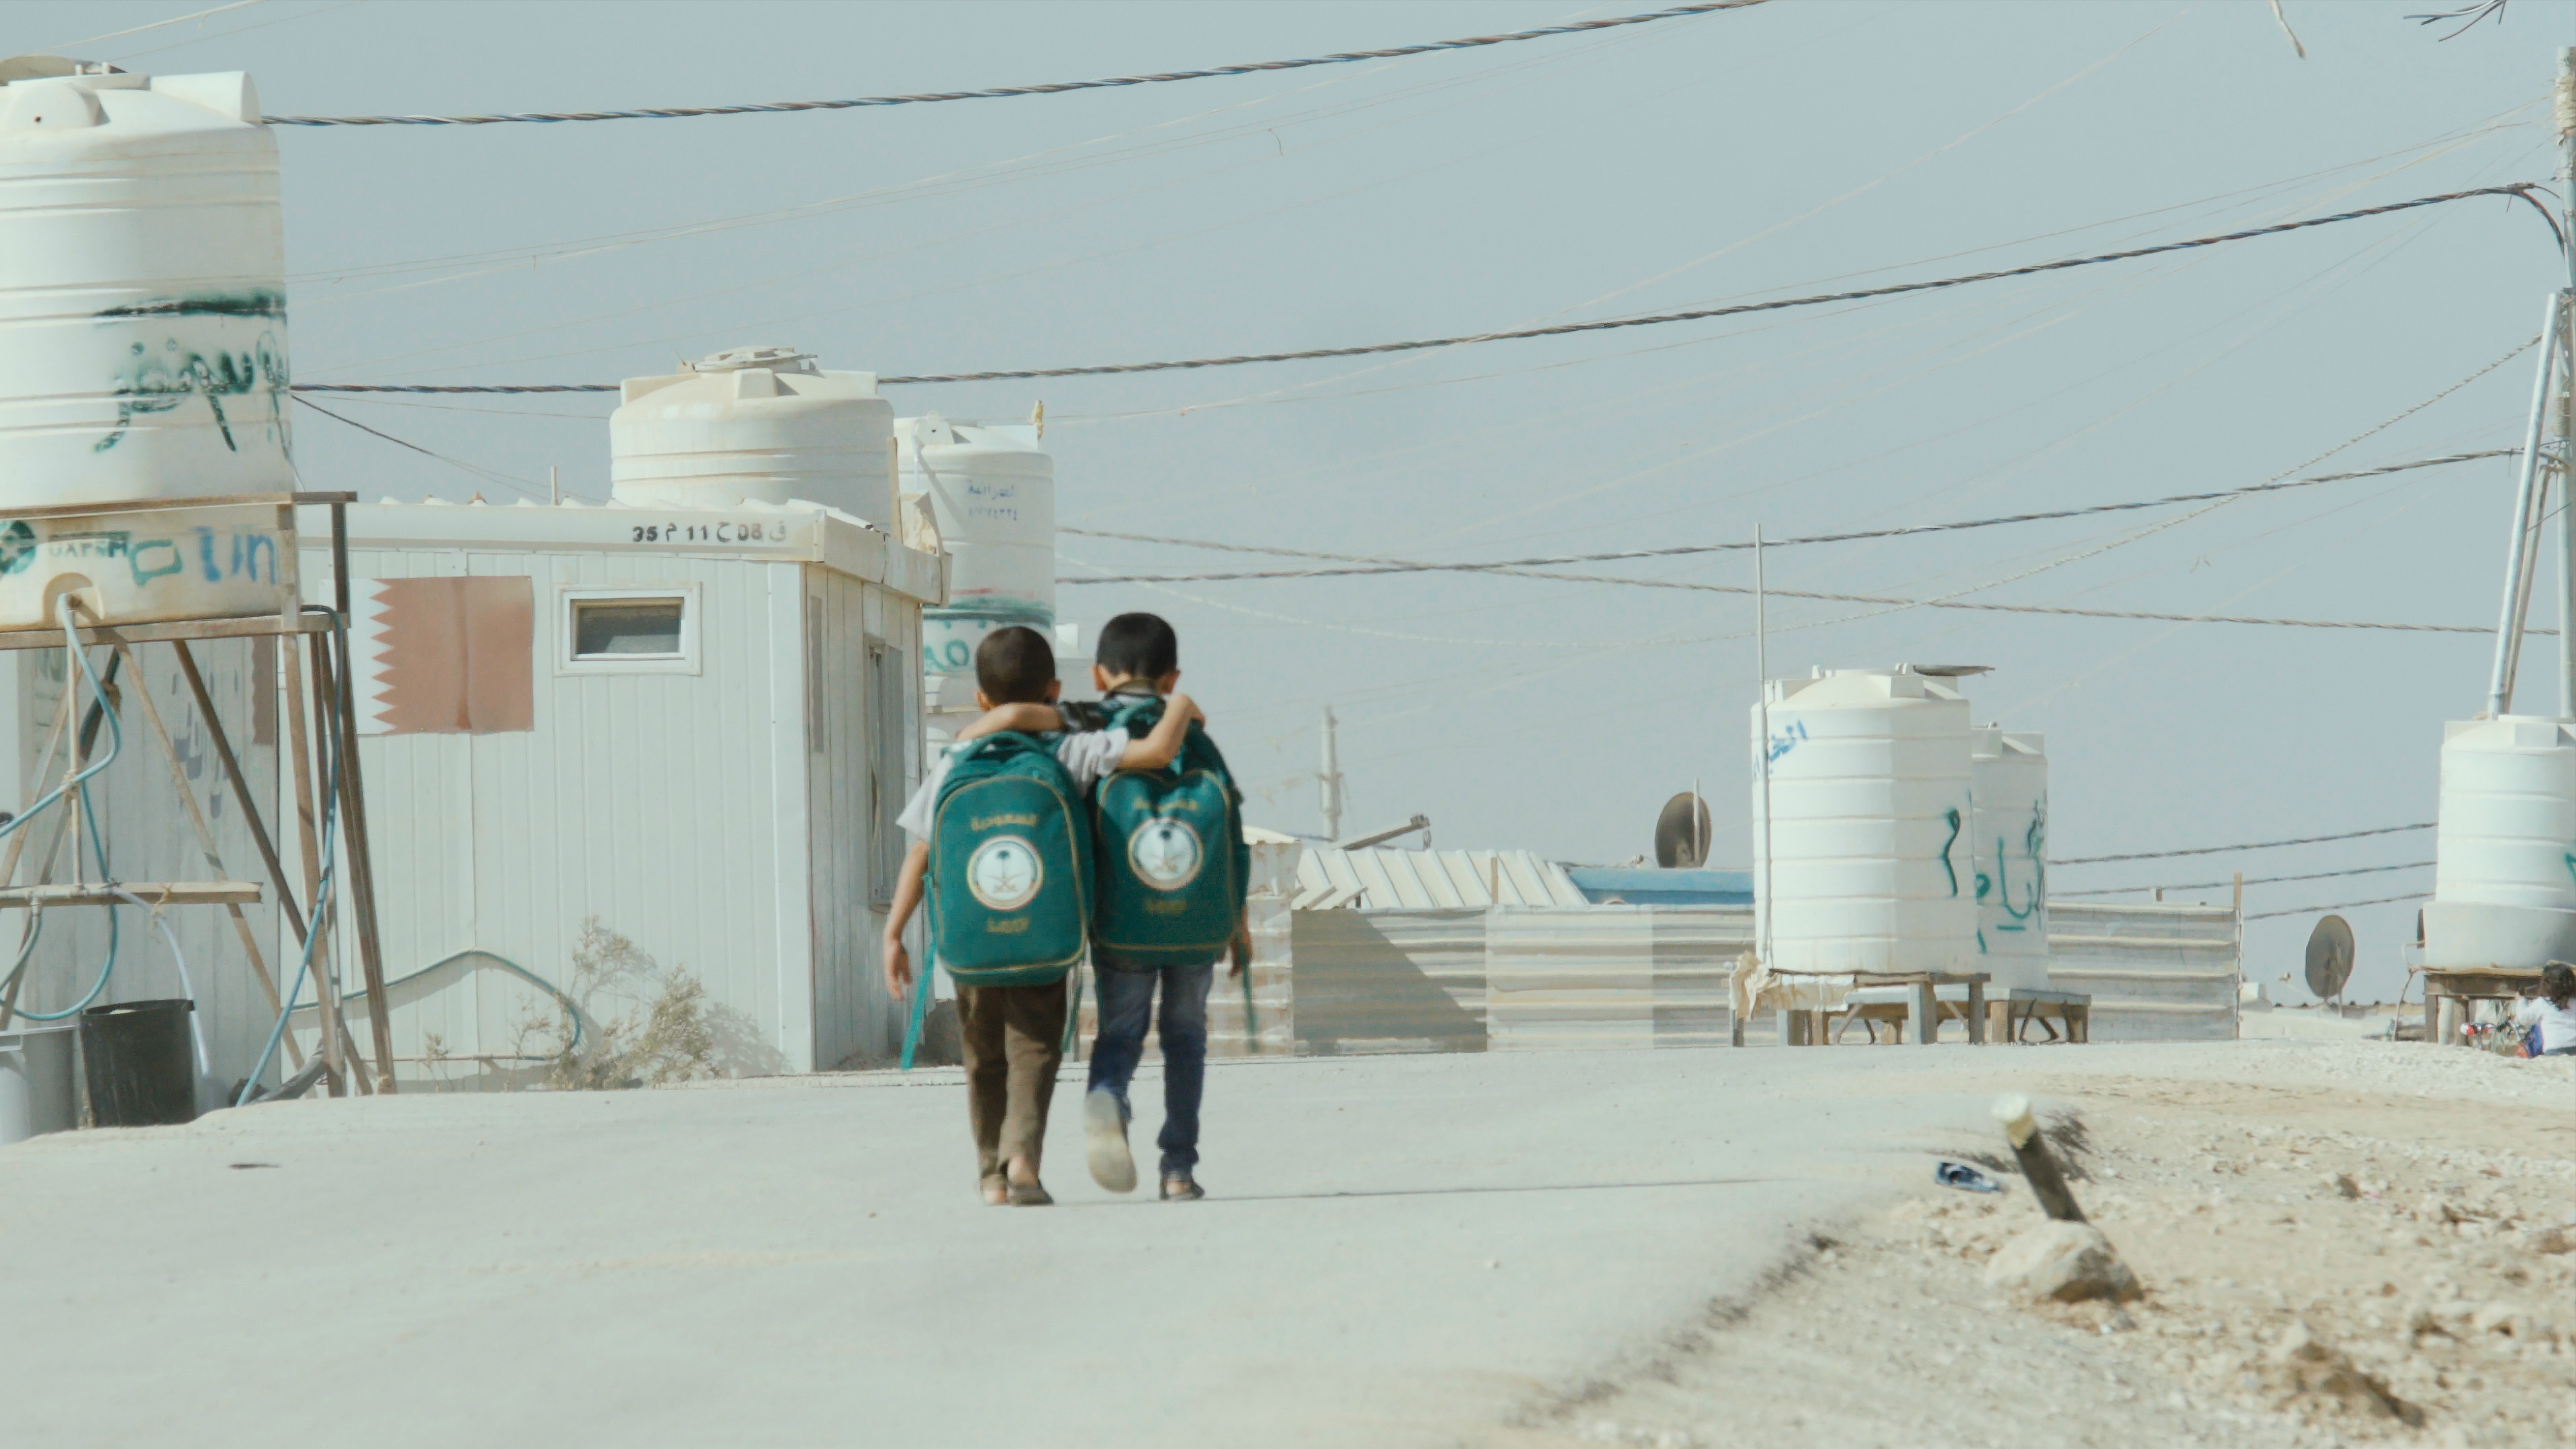 难民营里两个男孩步行上学/放学